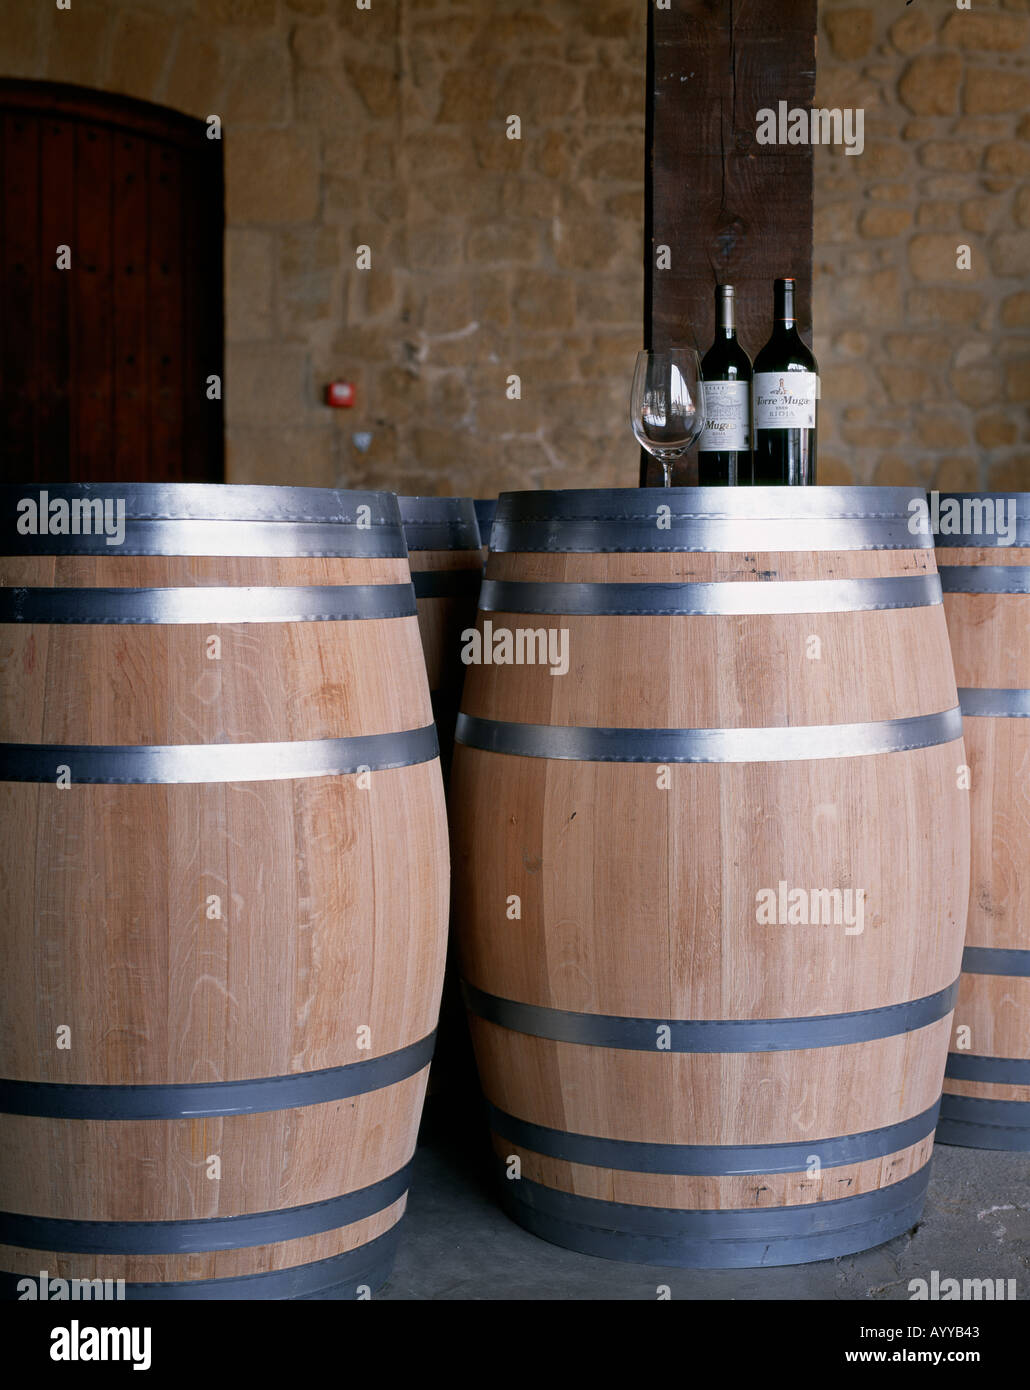 Botellas de Muga Reserva y Torre Muga en la parte superior de nuevos barriles de vino en Bodegas Muga Haro La Rioja España Foto de stock